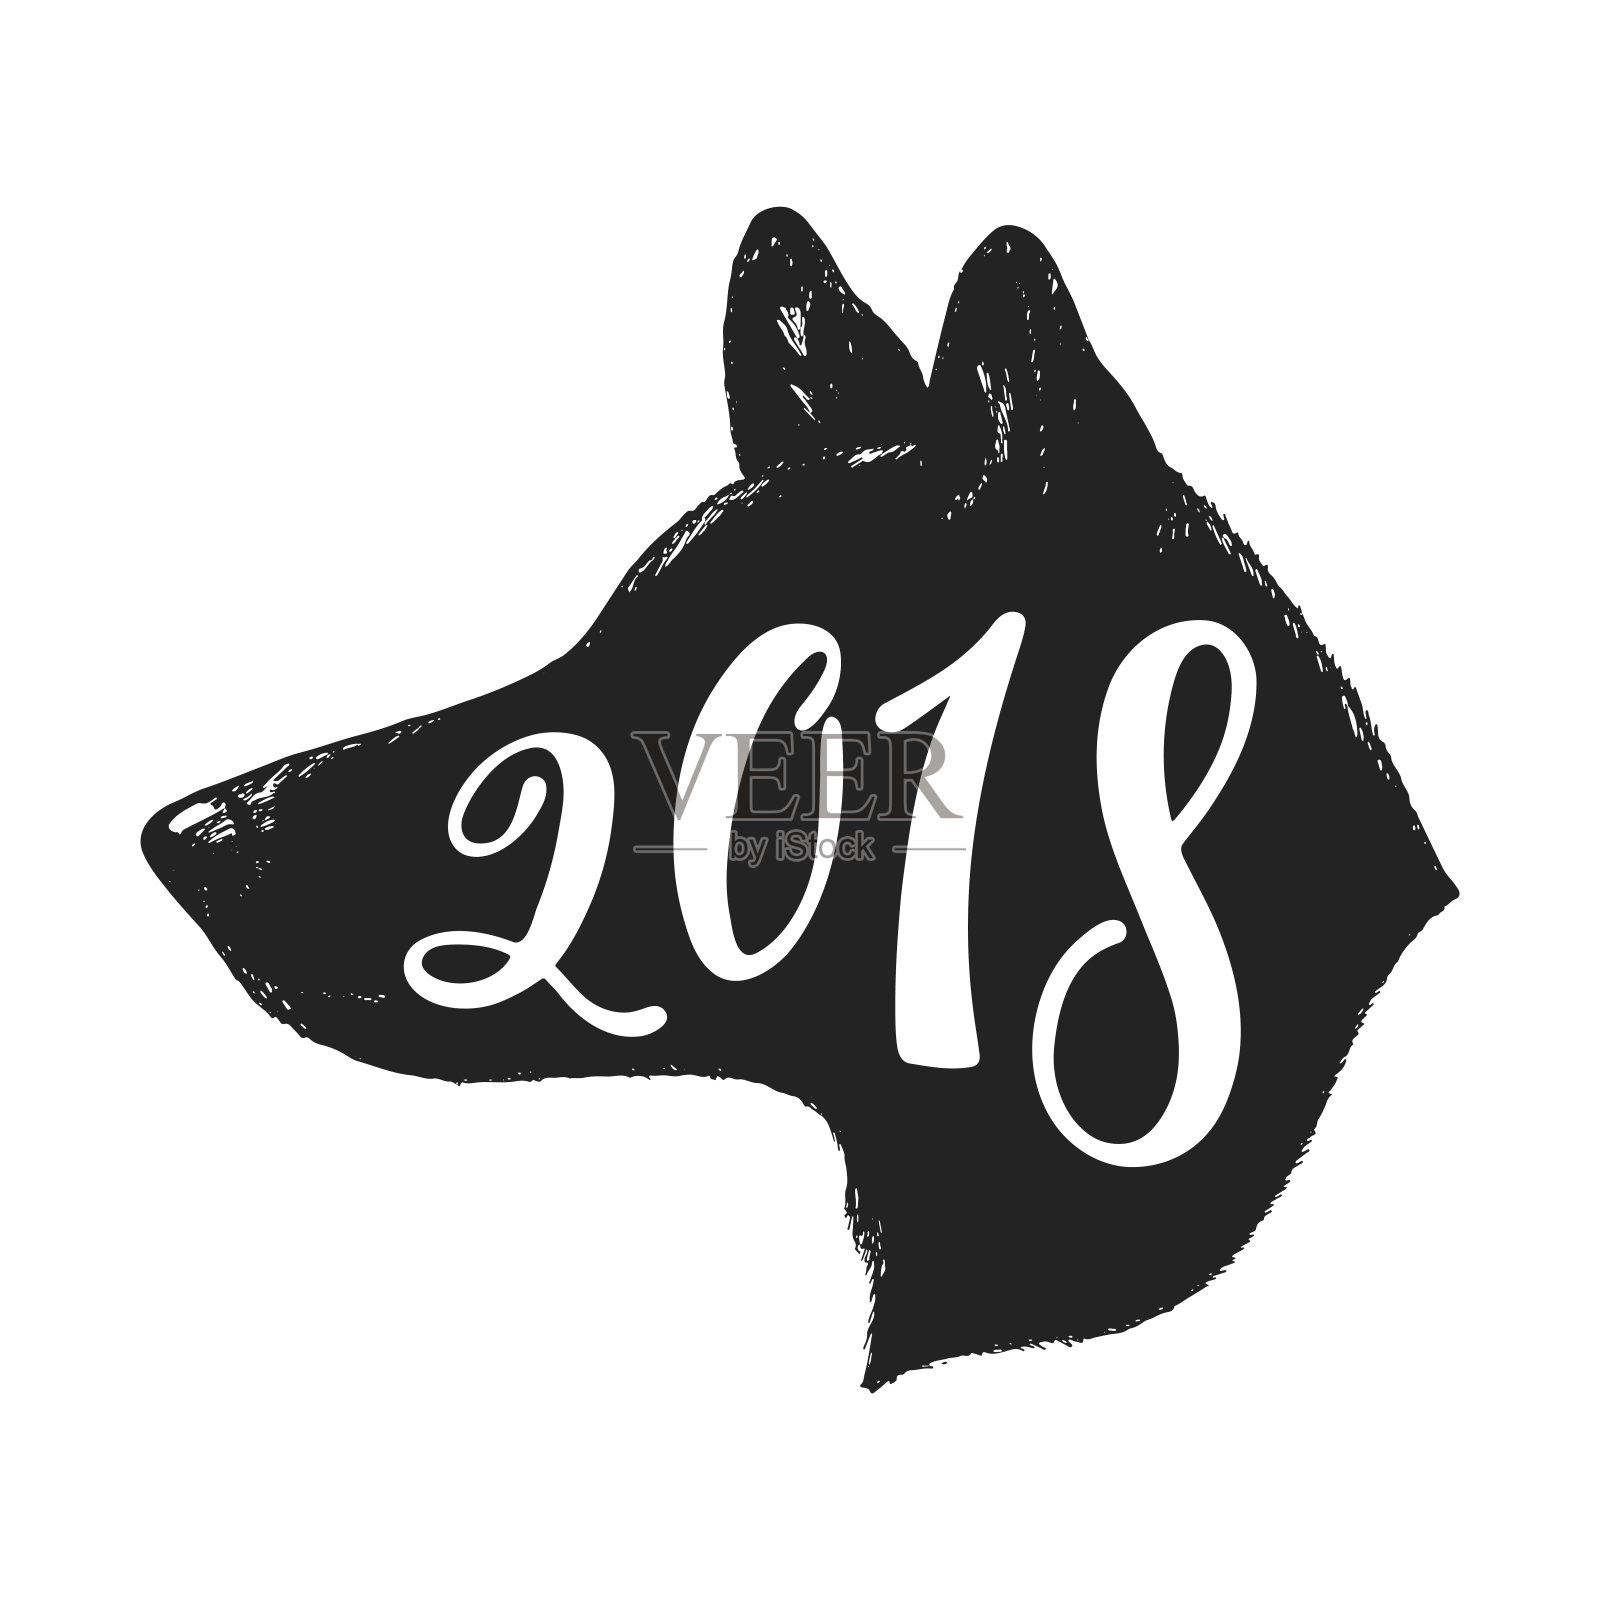 2018 -狗年。中国生肖图形设计。手绘排版设计。插画图片素材